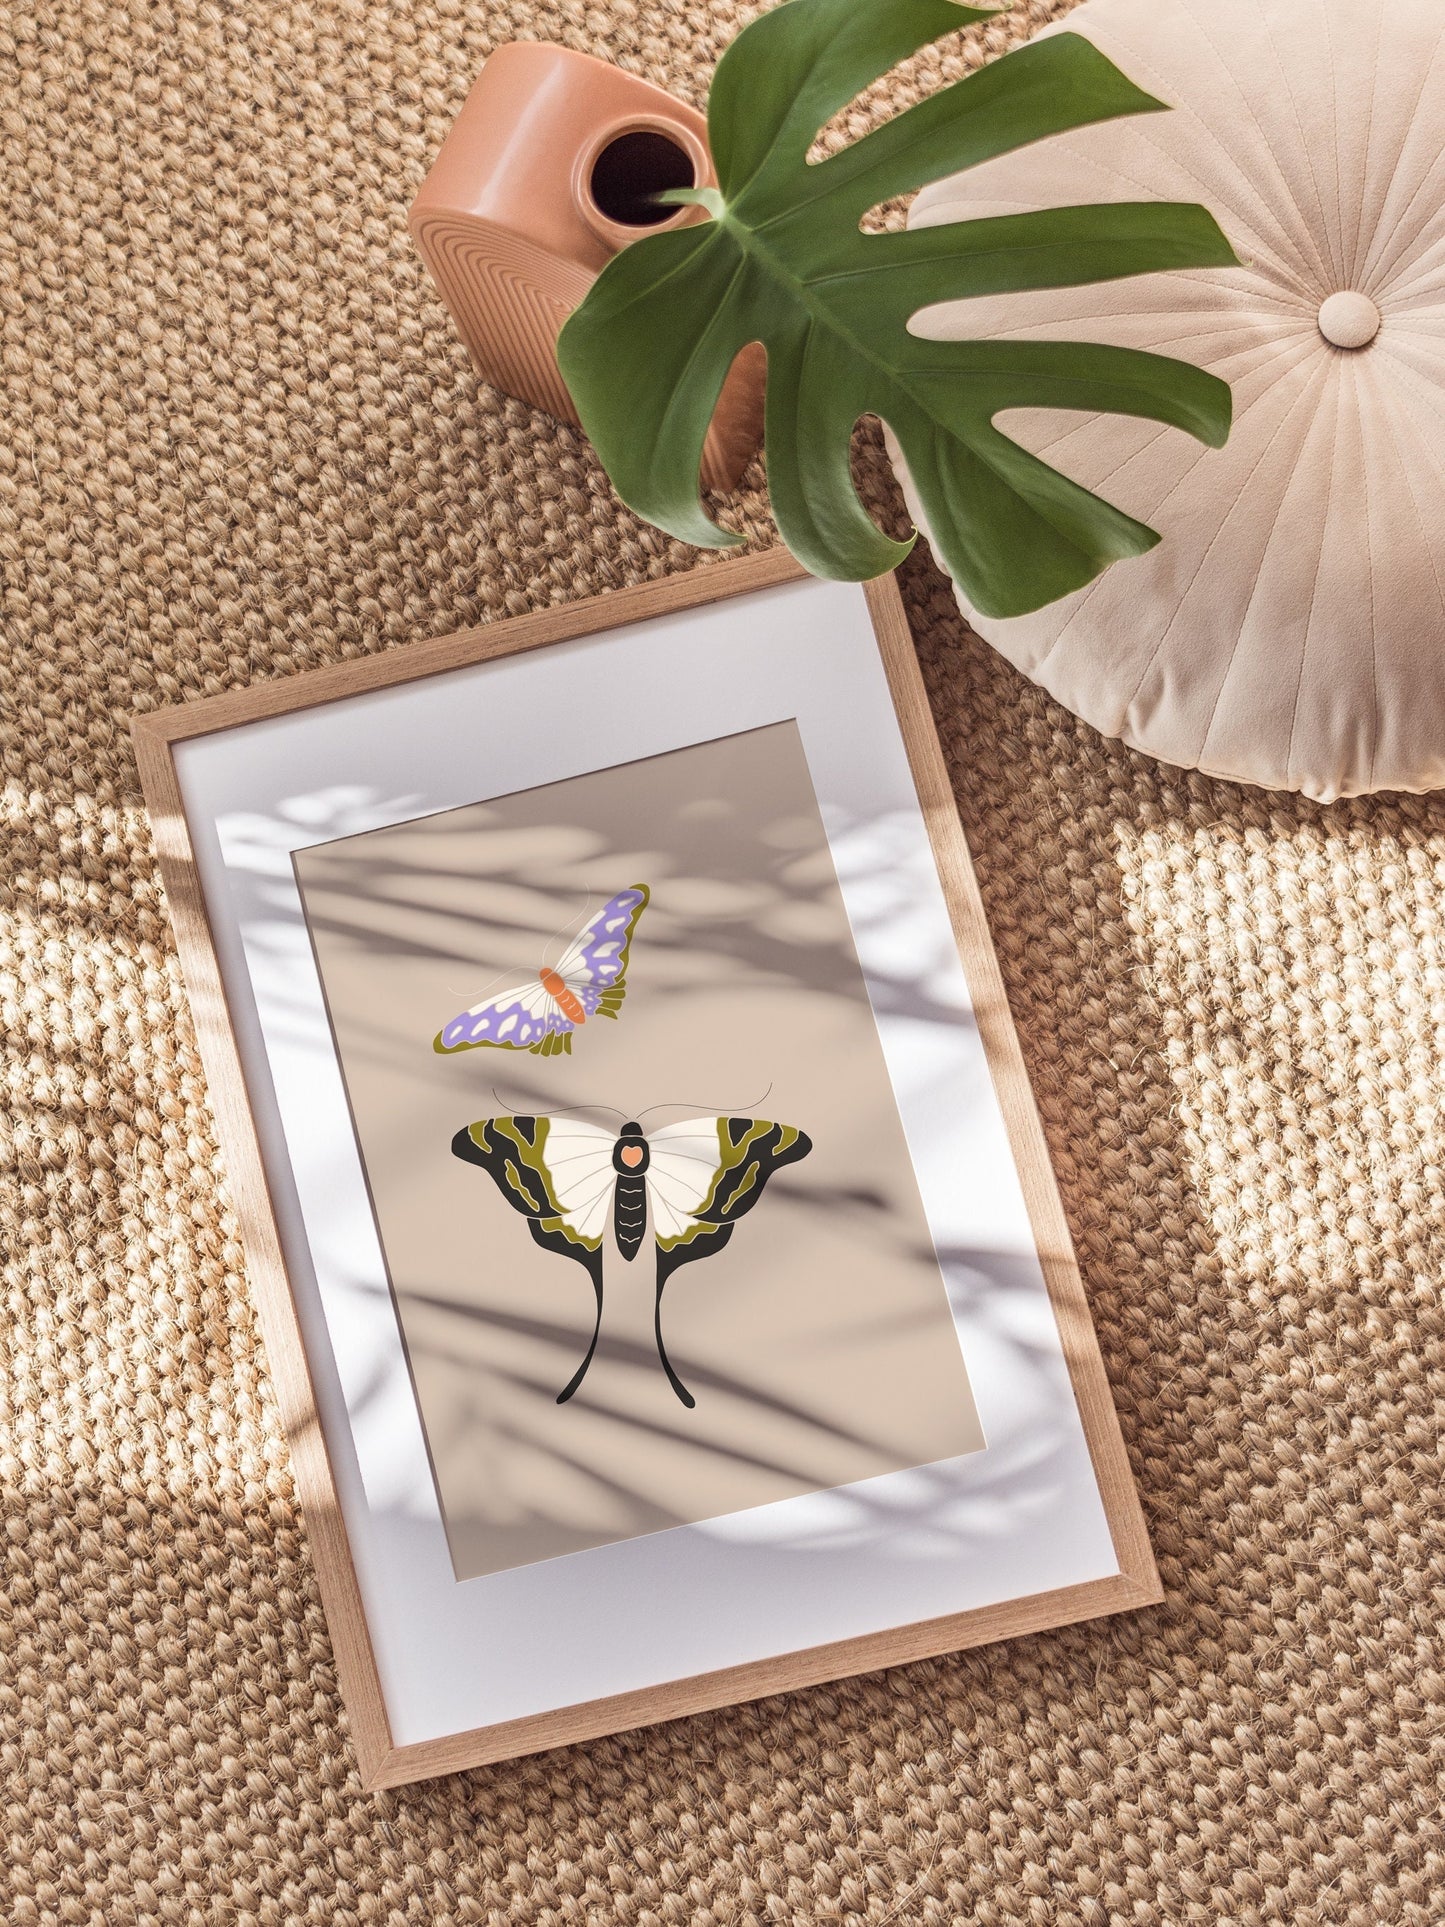 Fluttery Butterflies Digital Art Print